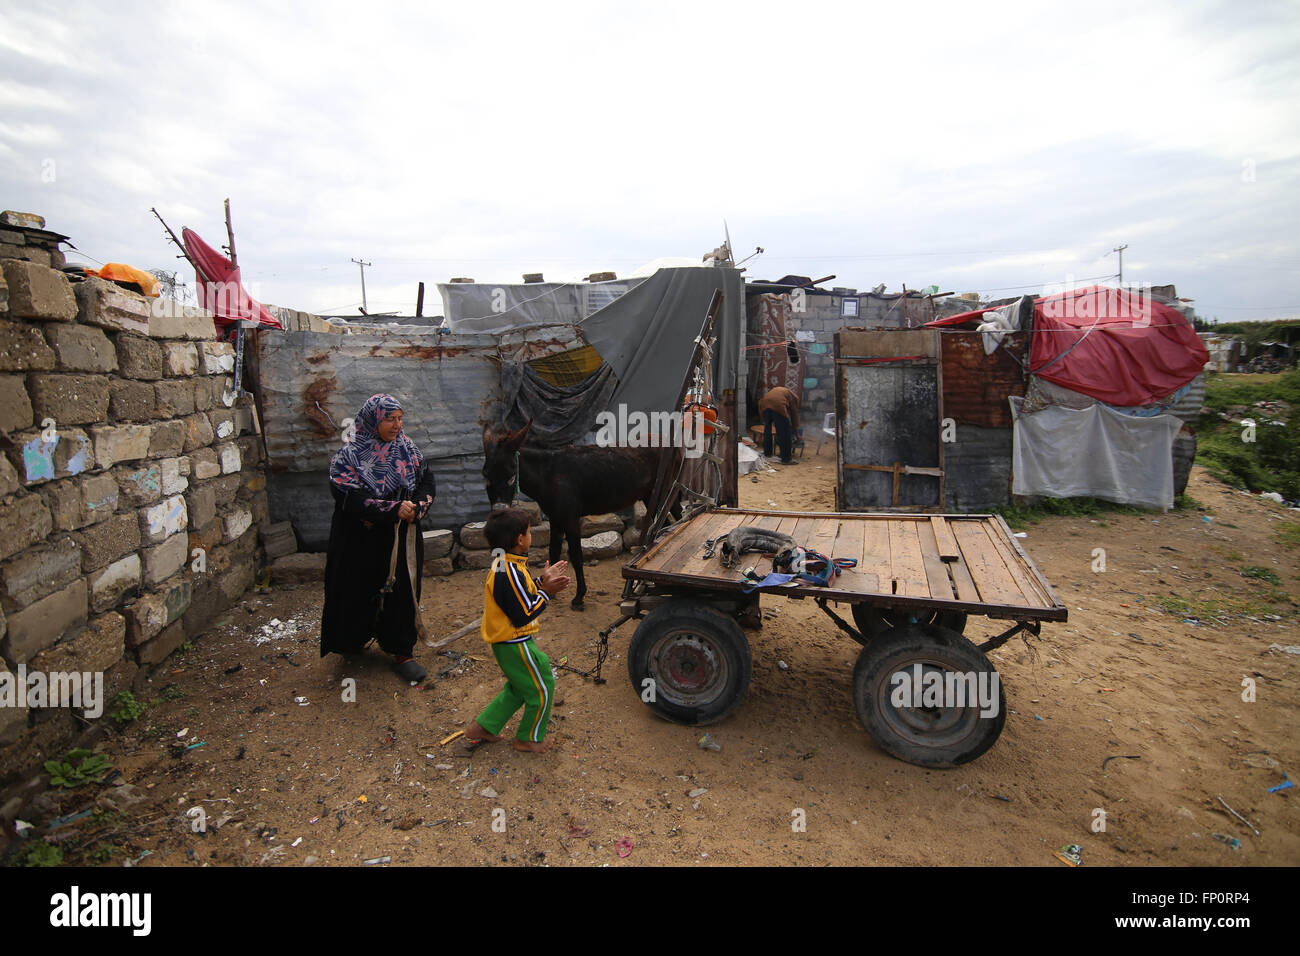 (160317) -- Gaza, 17 mars 2016 (Xinhua) -- Jihan palestinienne Moussa Abu Mohsen, 48 ans, et son fils Ahmad, 10, préparez-vous à recueillir des roches dans le sud de la bande de Gaza ville de Khan Yunis, le 17 mars 2016. Jihan, qui travaille à partir de la matinée jusque tard dans la journée, vend un panier de briques à des fabricants de pierres pour 4 dollars par jour. Son travail est la principale source de revenus pour sa famille qui se compose de son mari et ses quatre enfants. Jihan et son fils Ahmad se lever tôt chaque matin pour collecter des briques et pierres de n'importe où ils les trouvent, que ce soit dans des décharges, des rues ou des routes. (Xinhua/Kha Banque D'Images